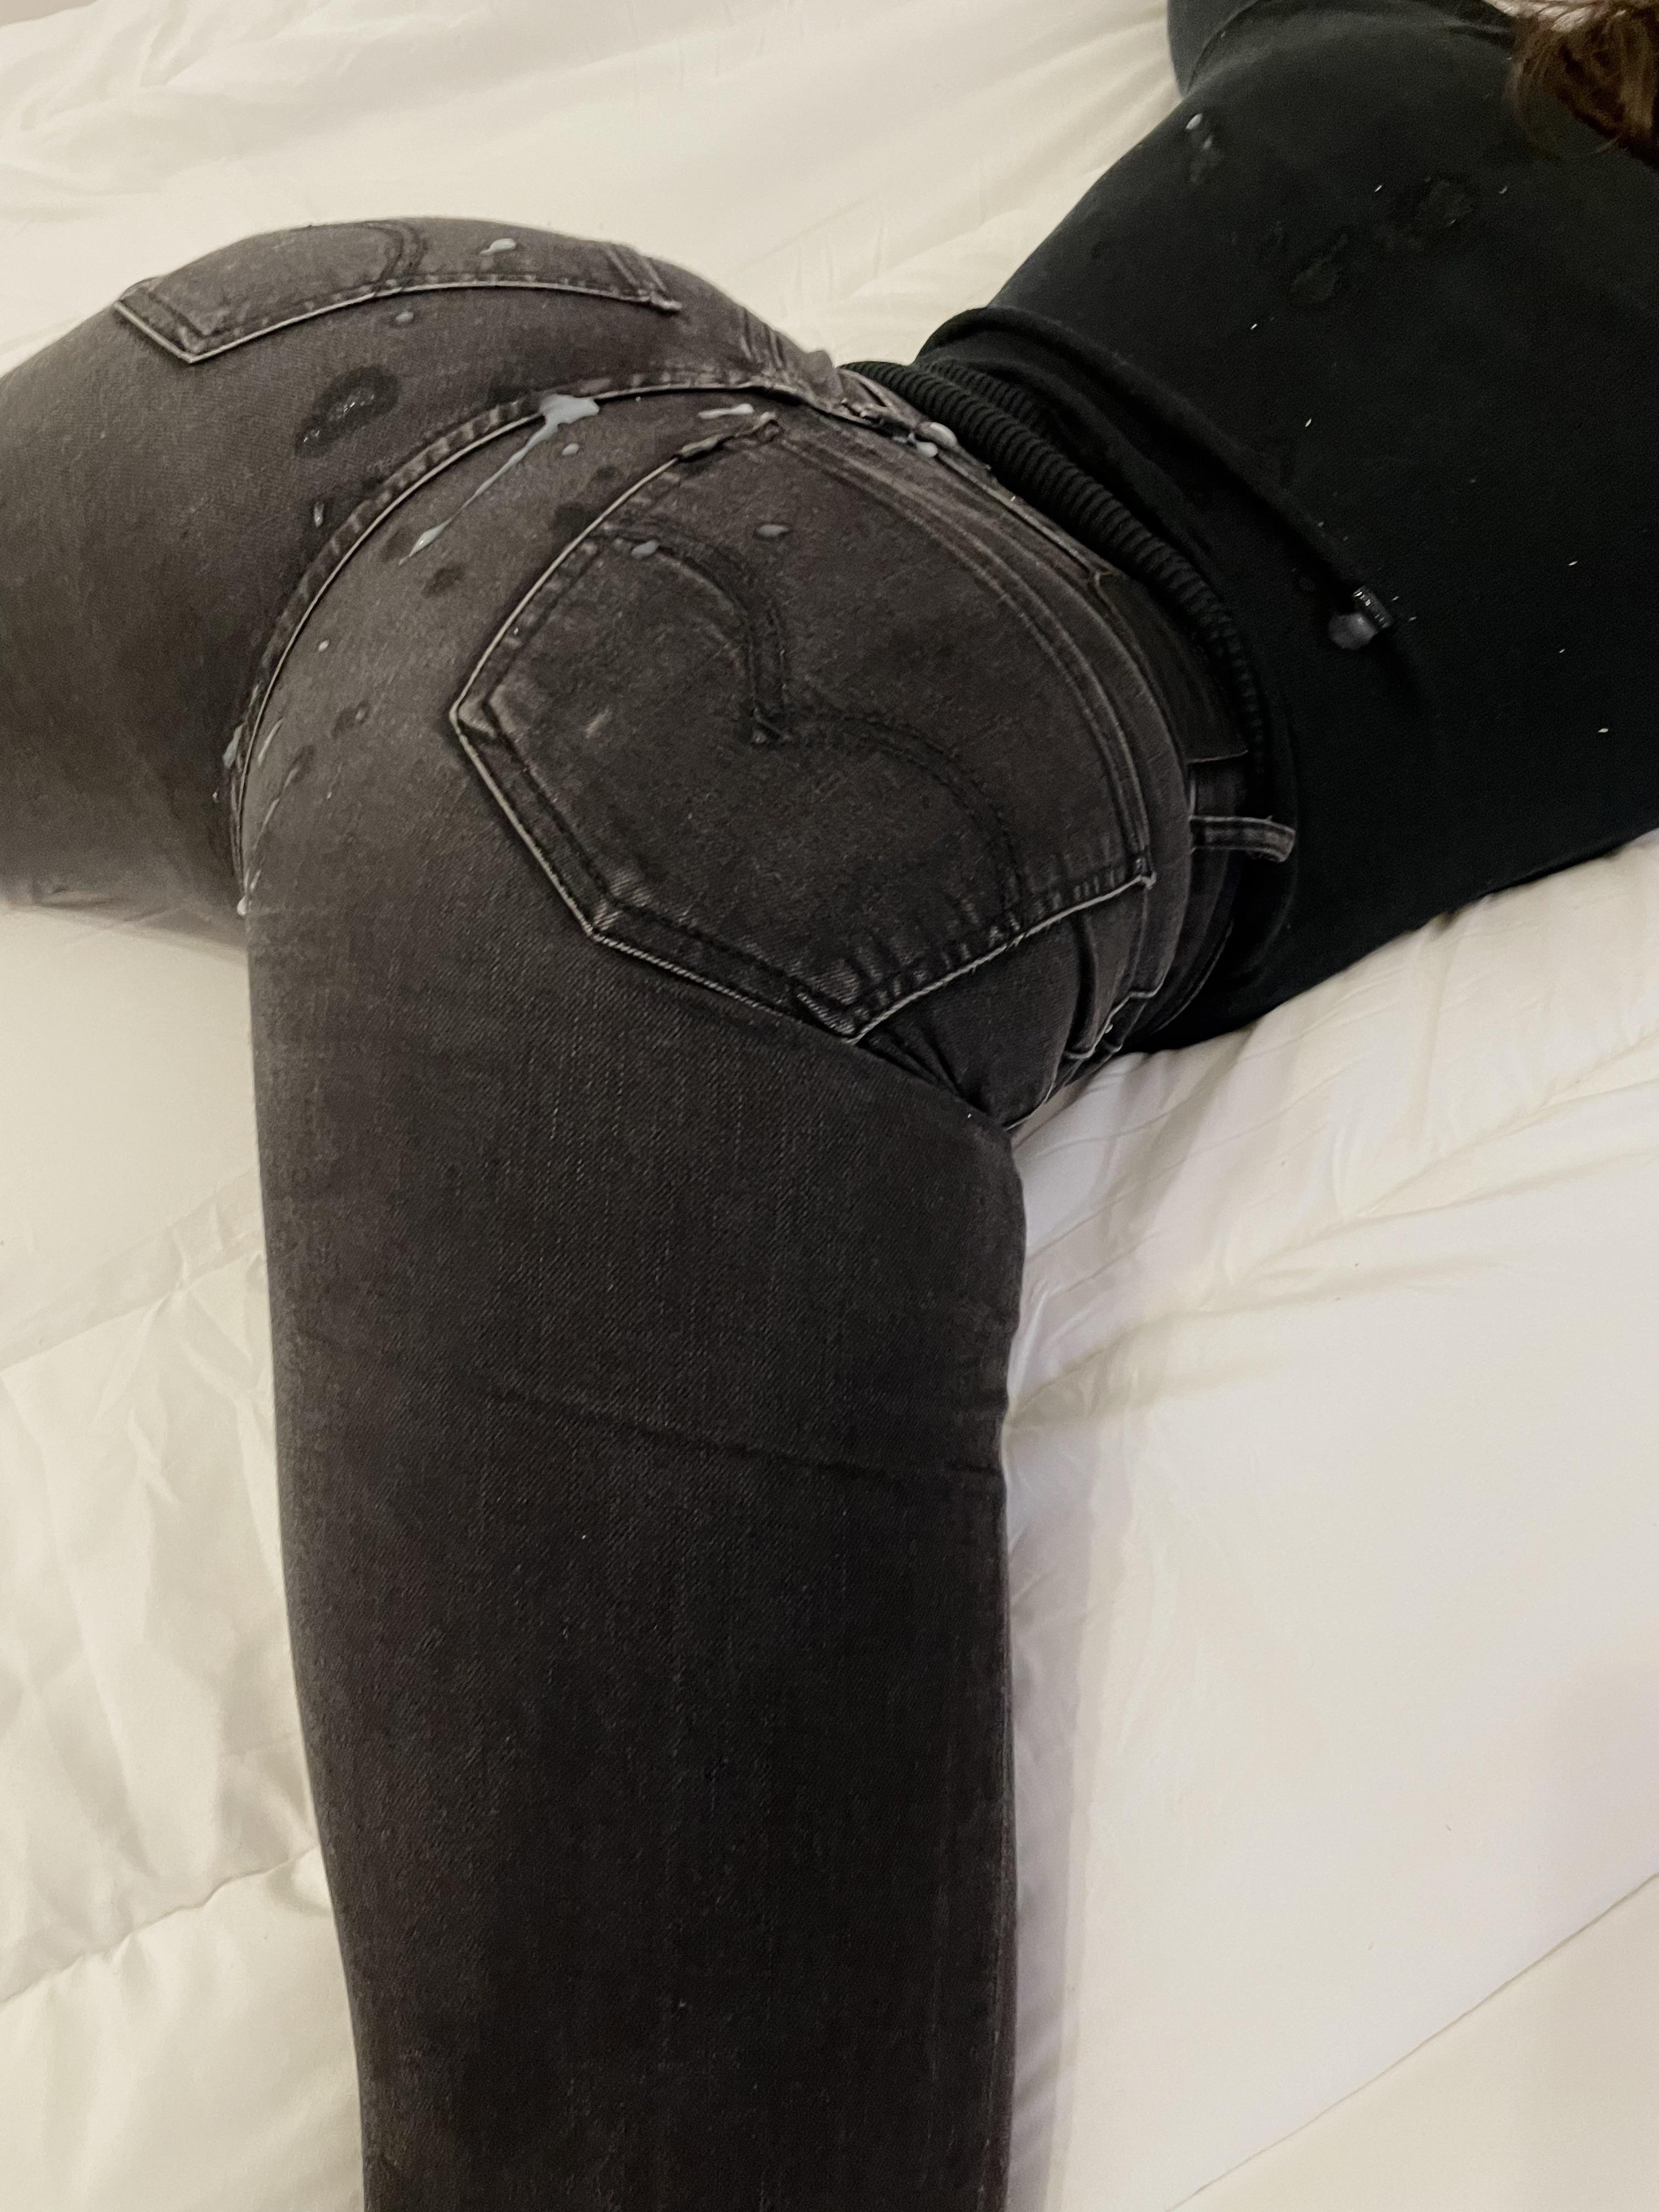 Ein ungezogenes Mädchen zu sein, bringt Vorteile mit sich, wenn ich Sperma auf meiner Jeans trage Foto